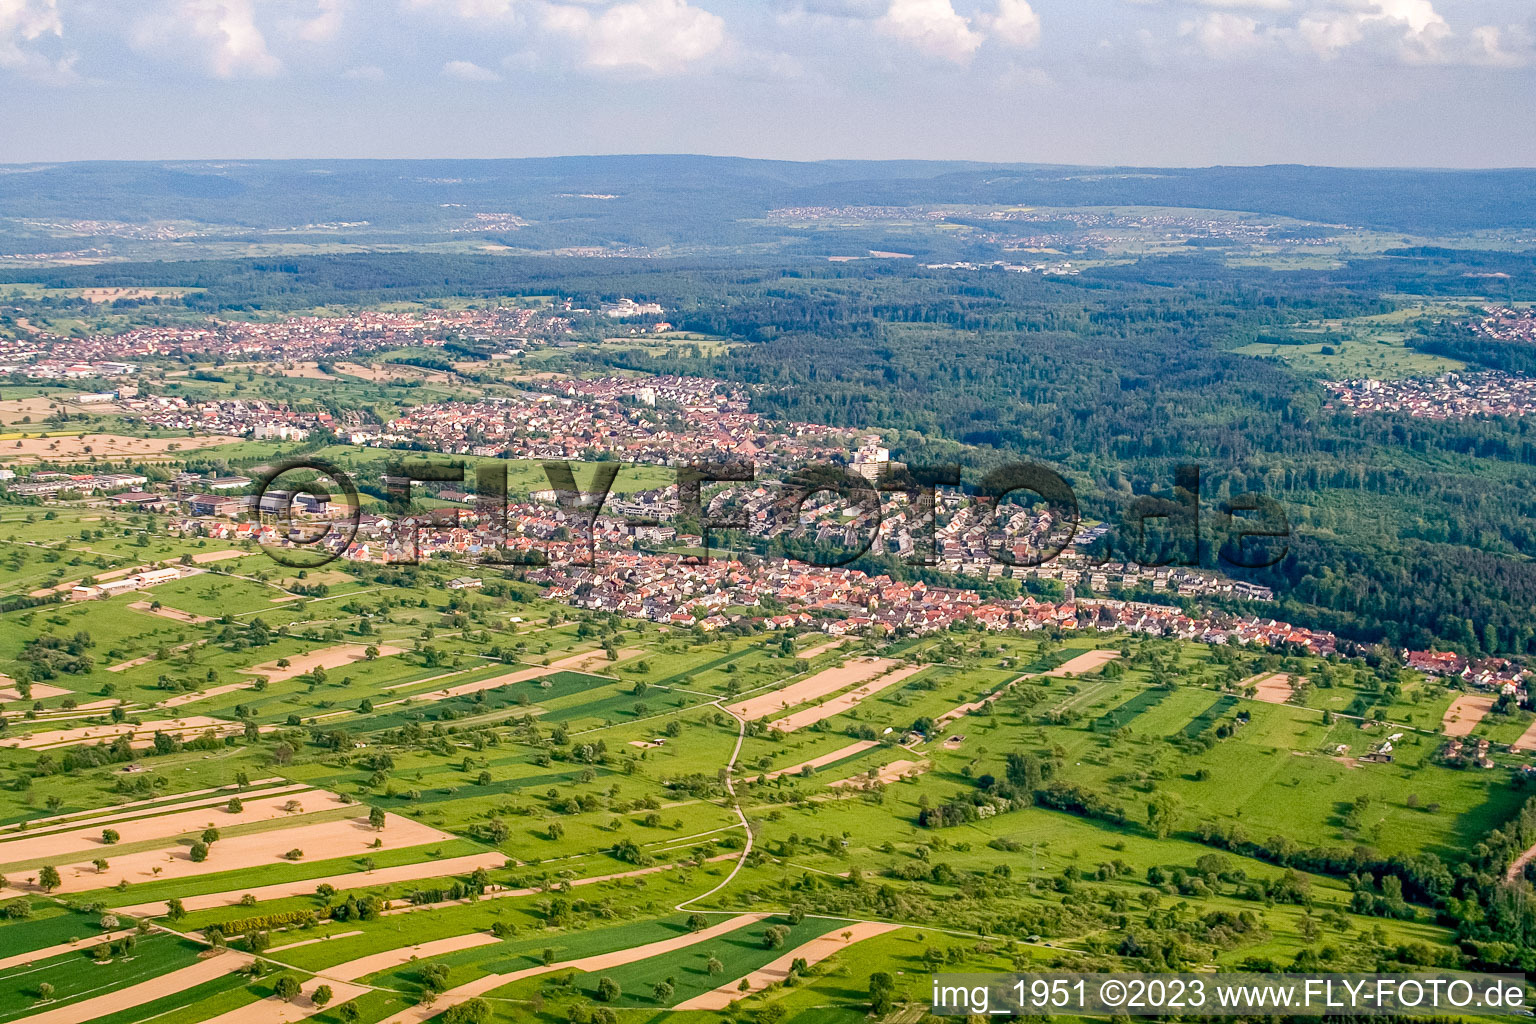 Luftbild von Ortsteil Busenbach in Waldbronn im Bundesland Baden-Württemberg, Deutschland